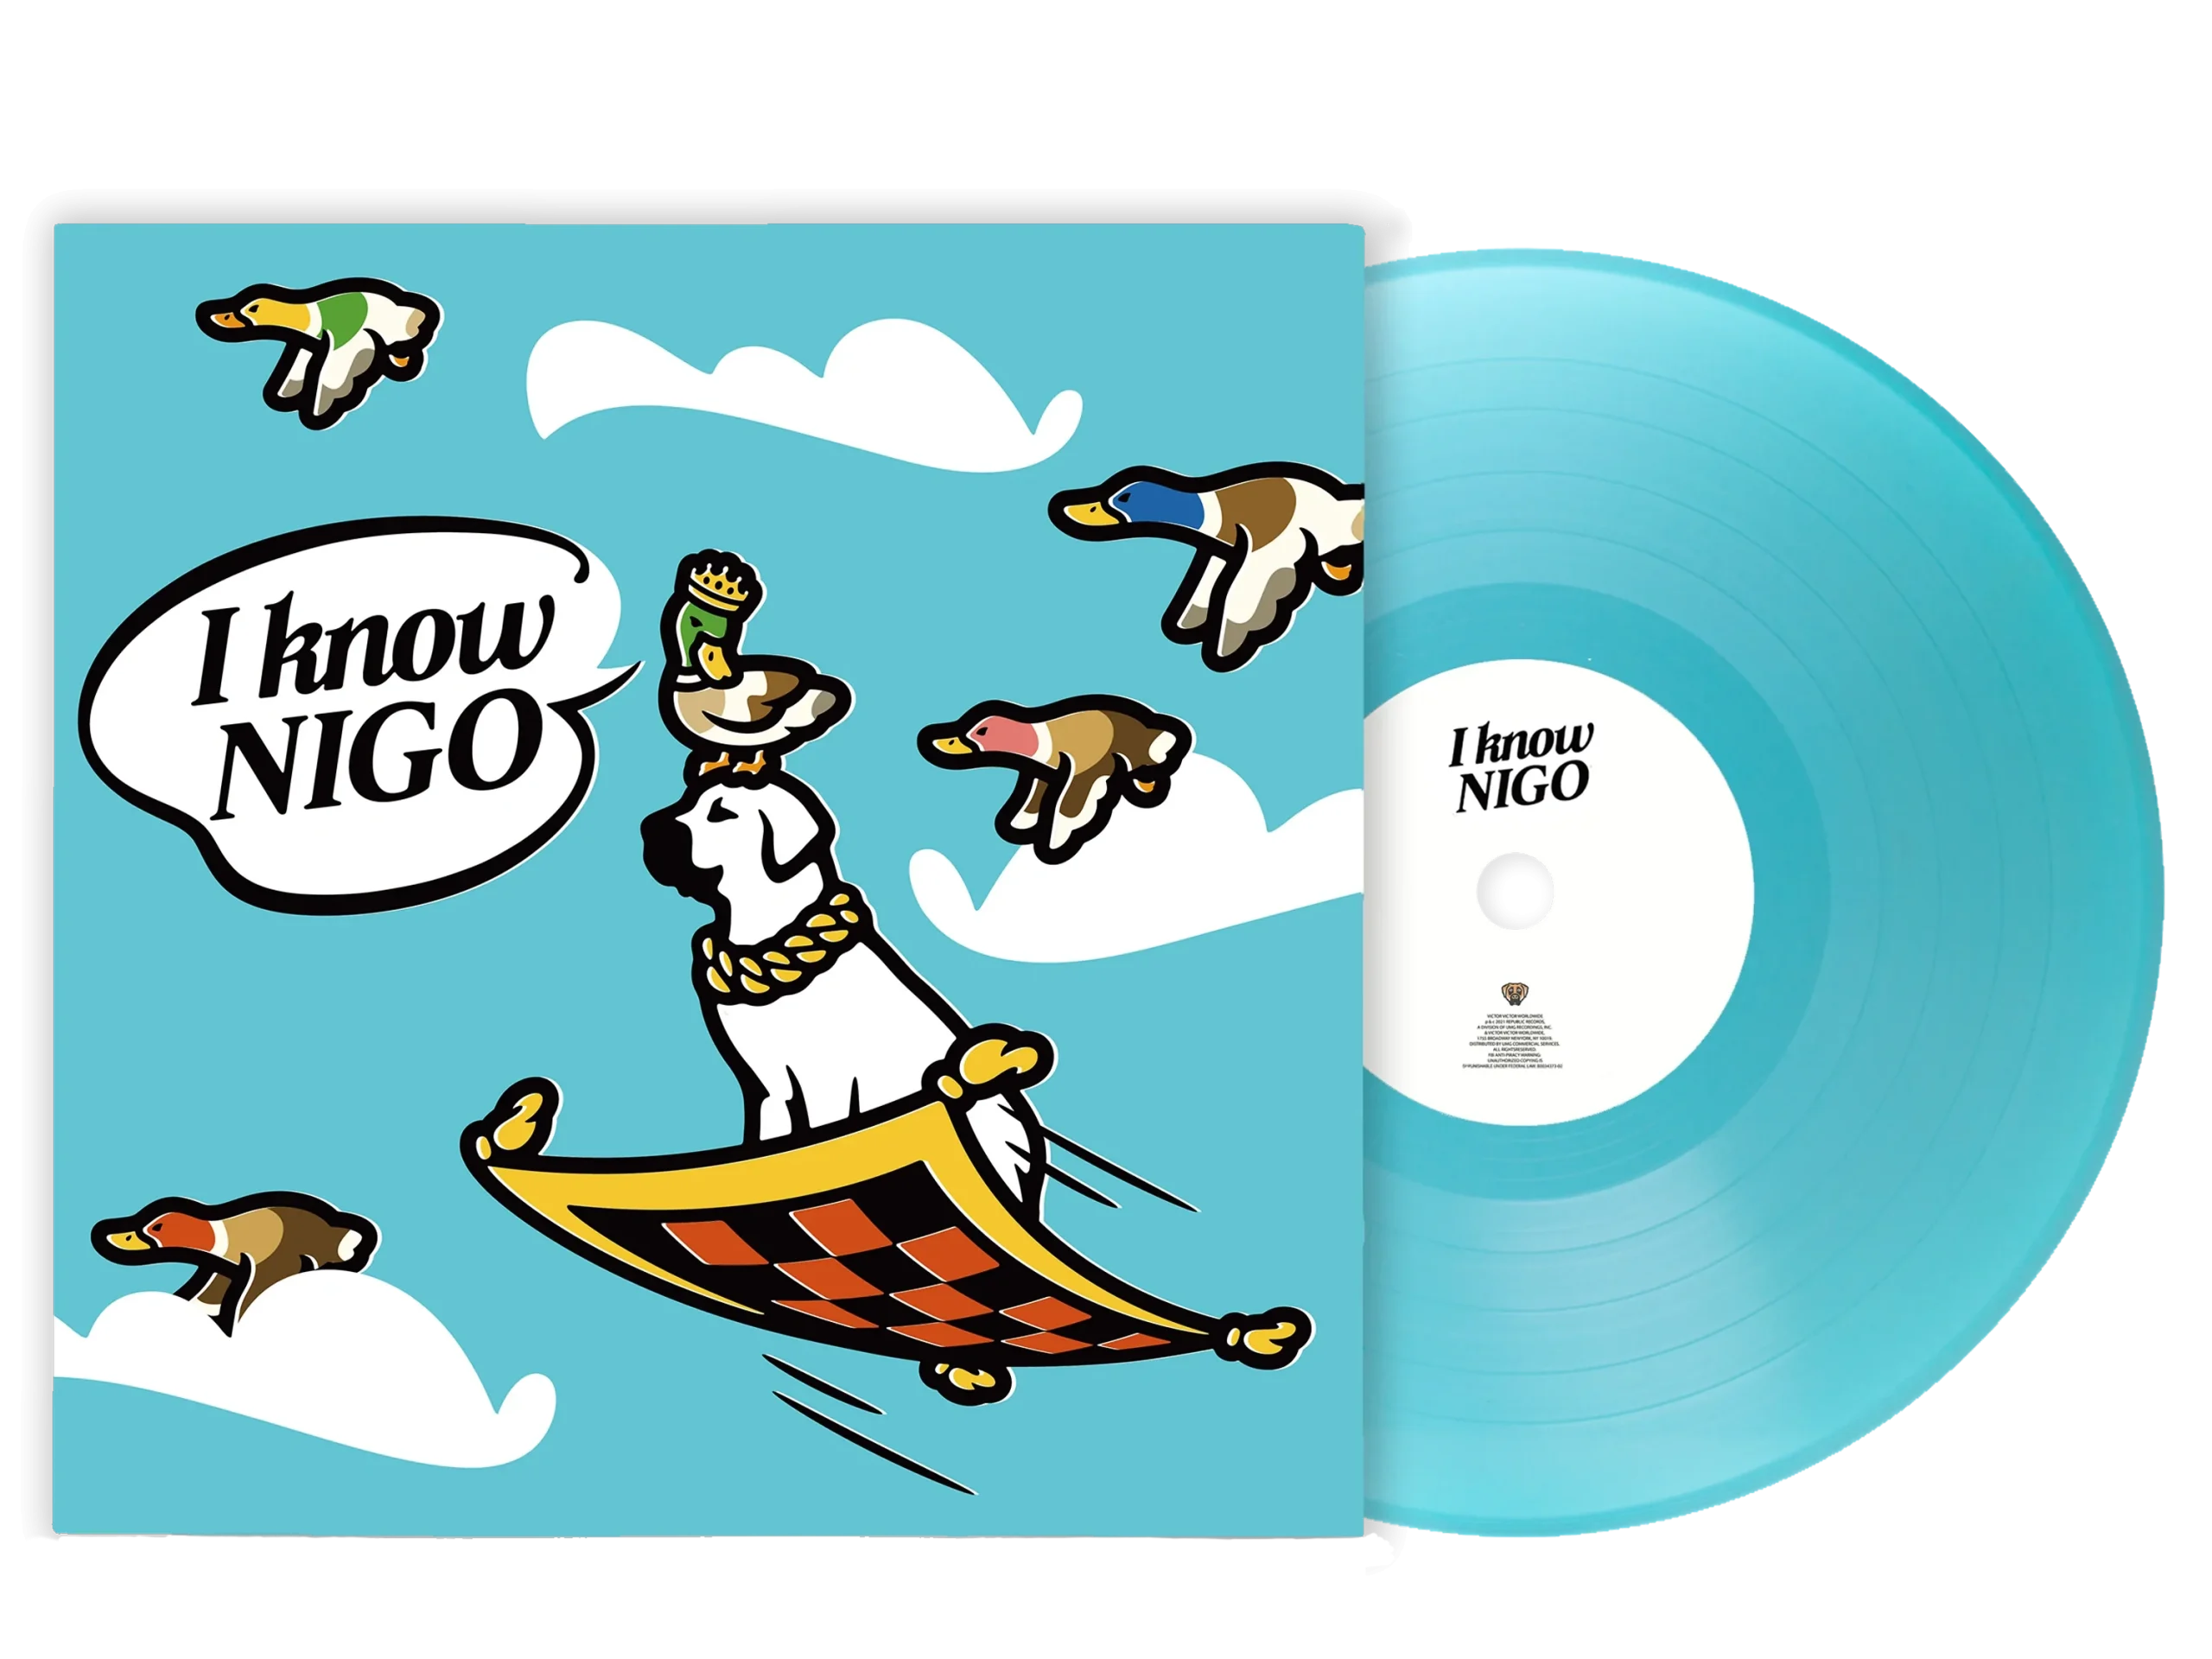 NIGO レコード I KNOW NIGO KAWS VINYL 未開封 - 洋楽